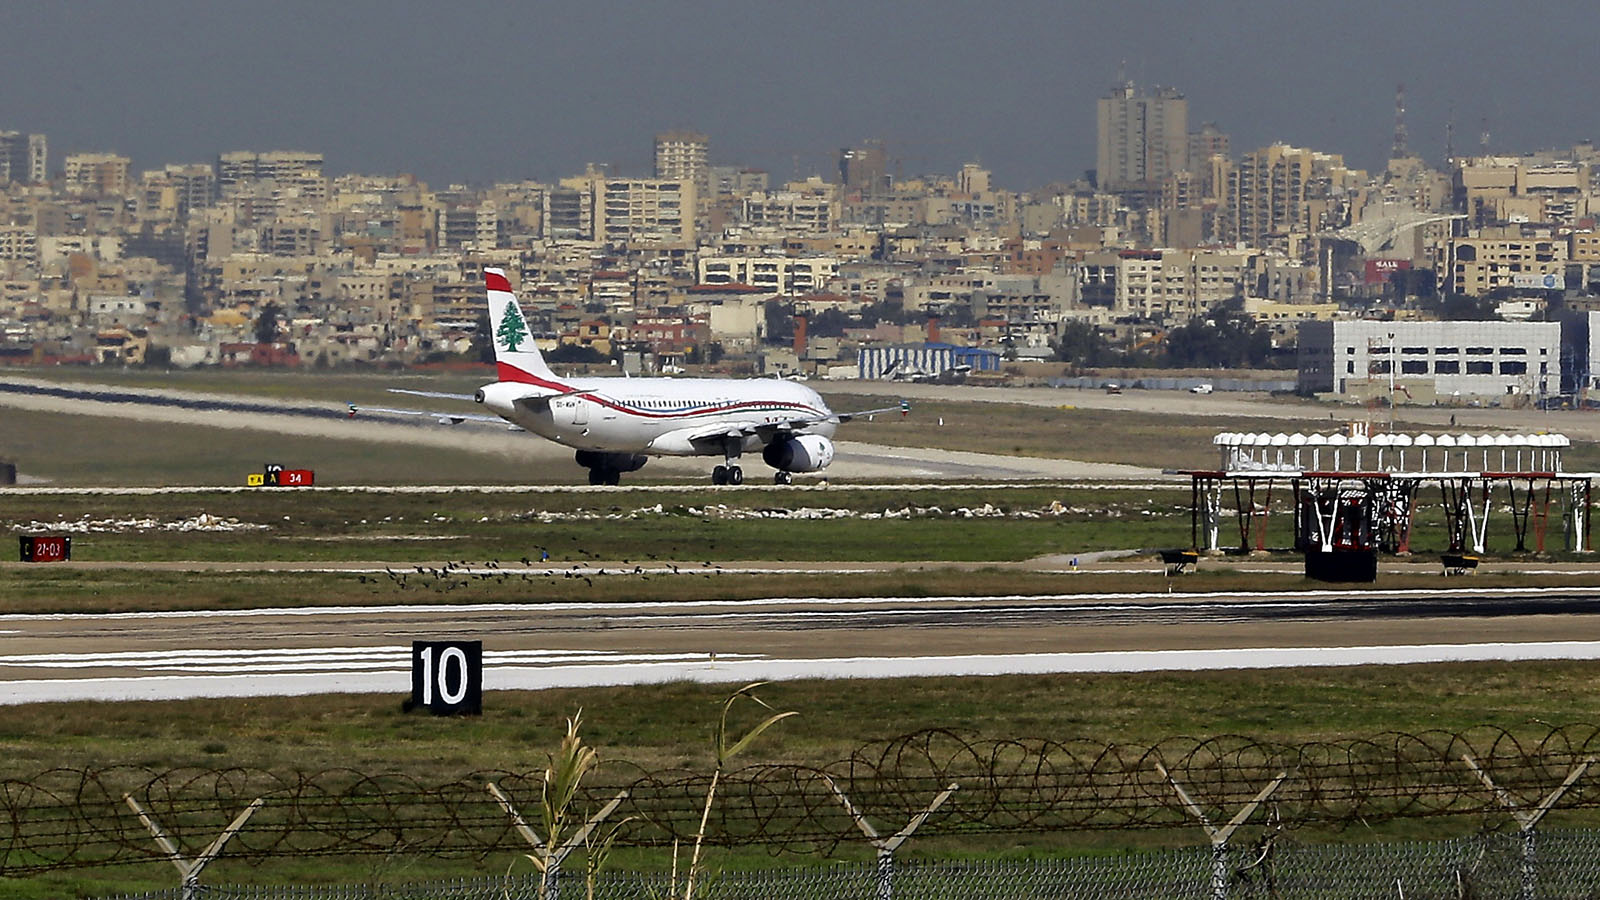 التشويش الإسرائيلي يصيب مطار بيروت: حركة الملاحة طبيعية